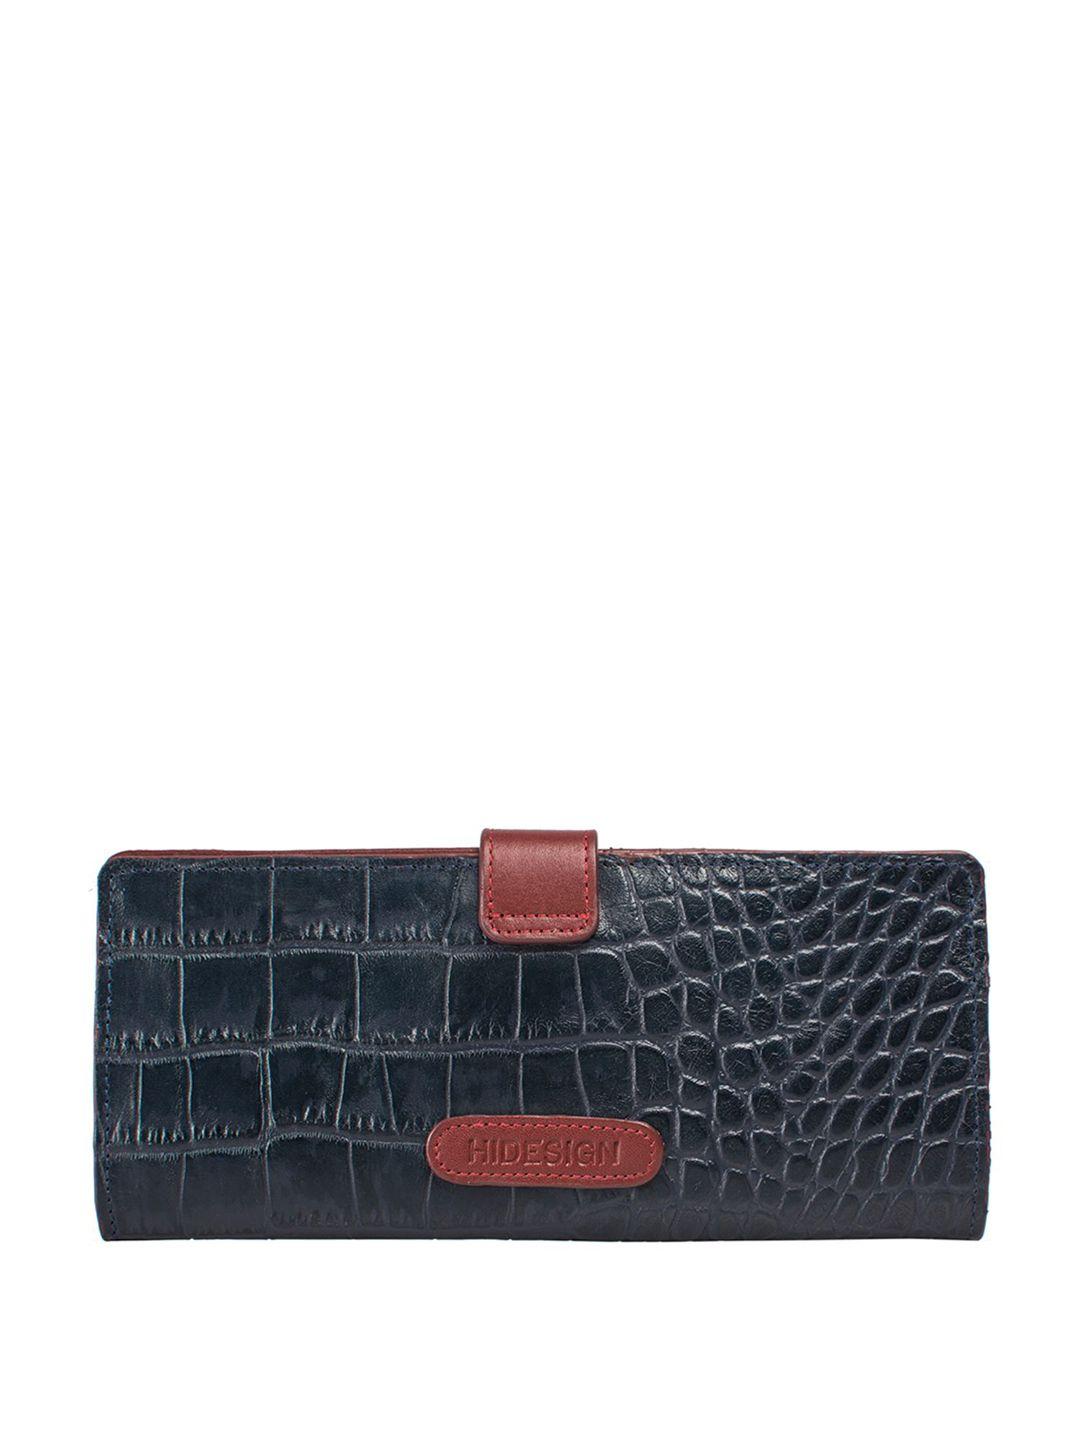 hidesign-animal-textured-purse-clutch